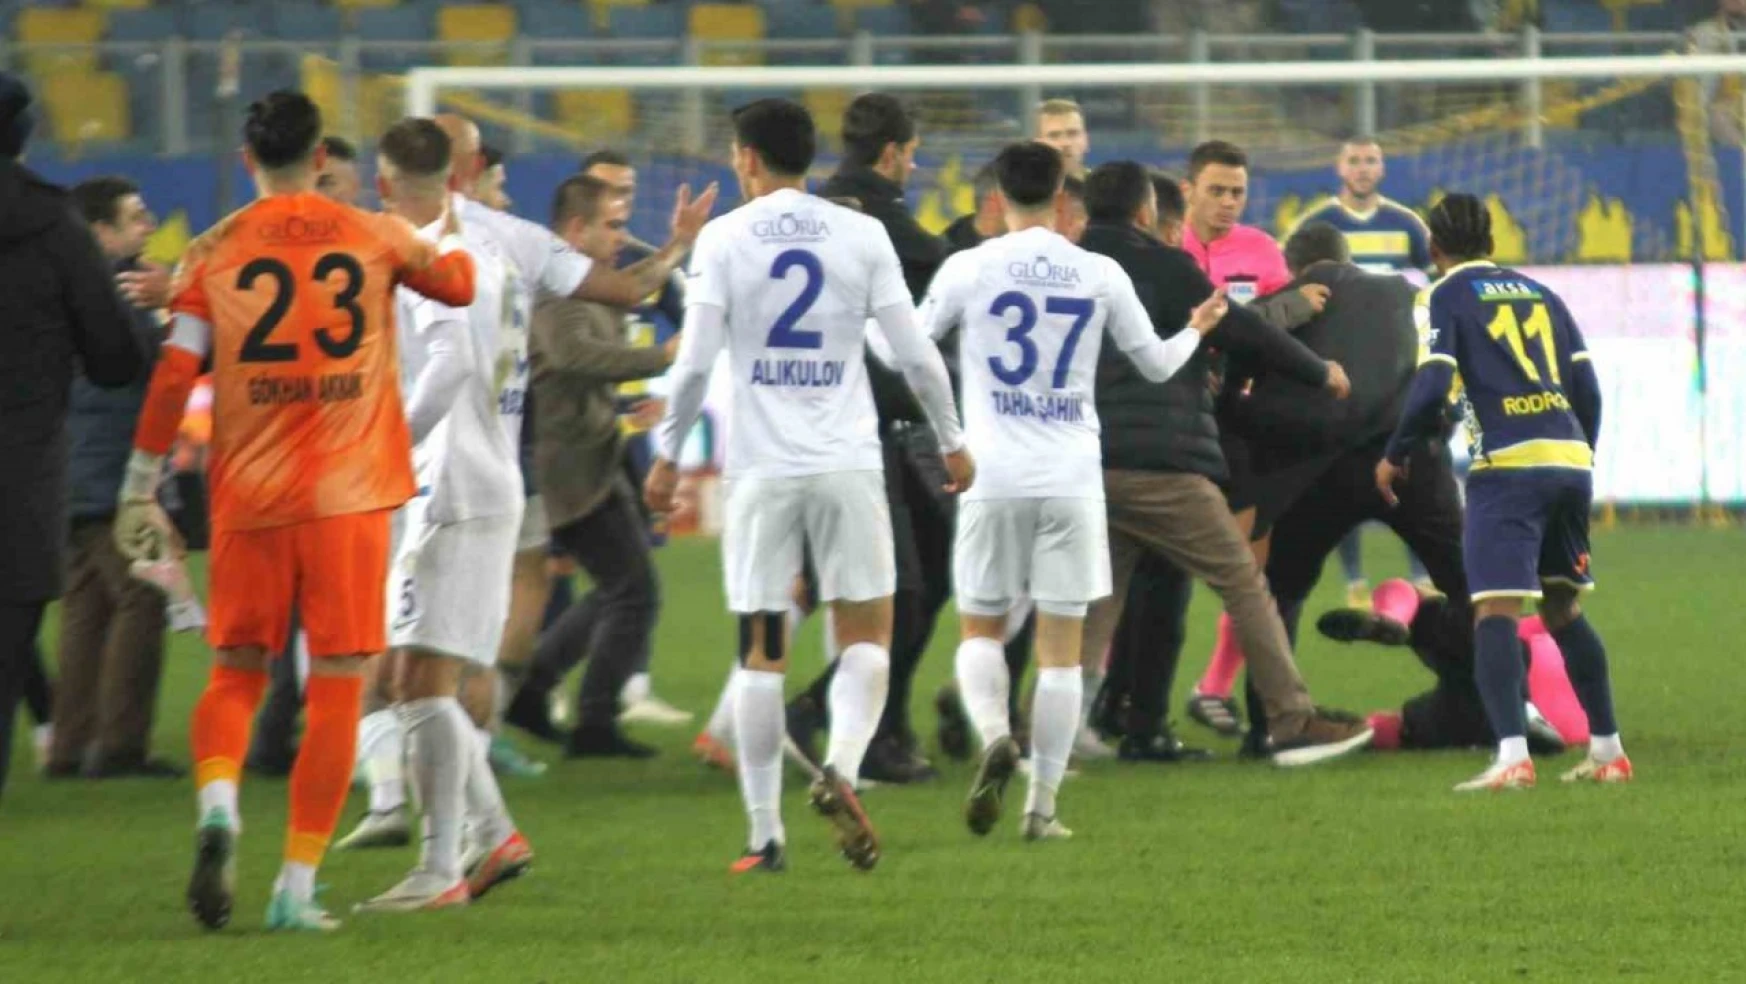 Süper Lig kulüpleri, Halil Umut Meler'e yapılan saldırıyı kınadı